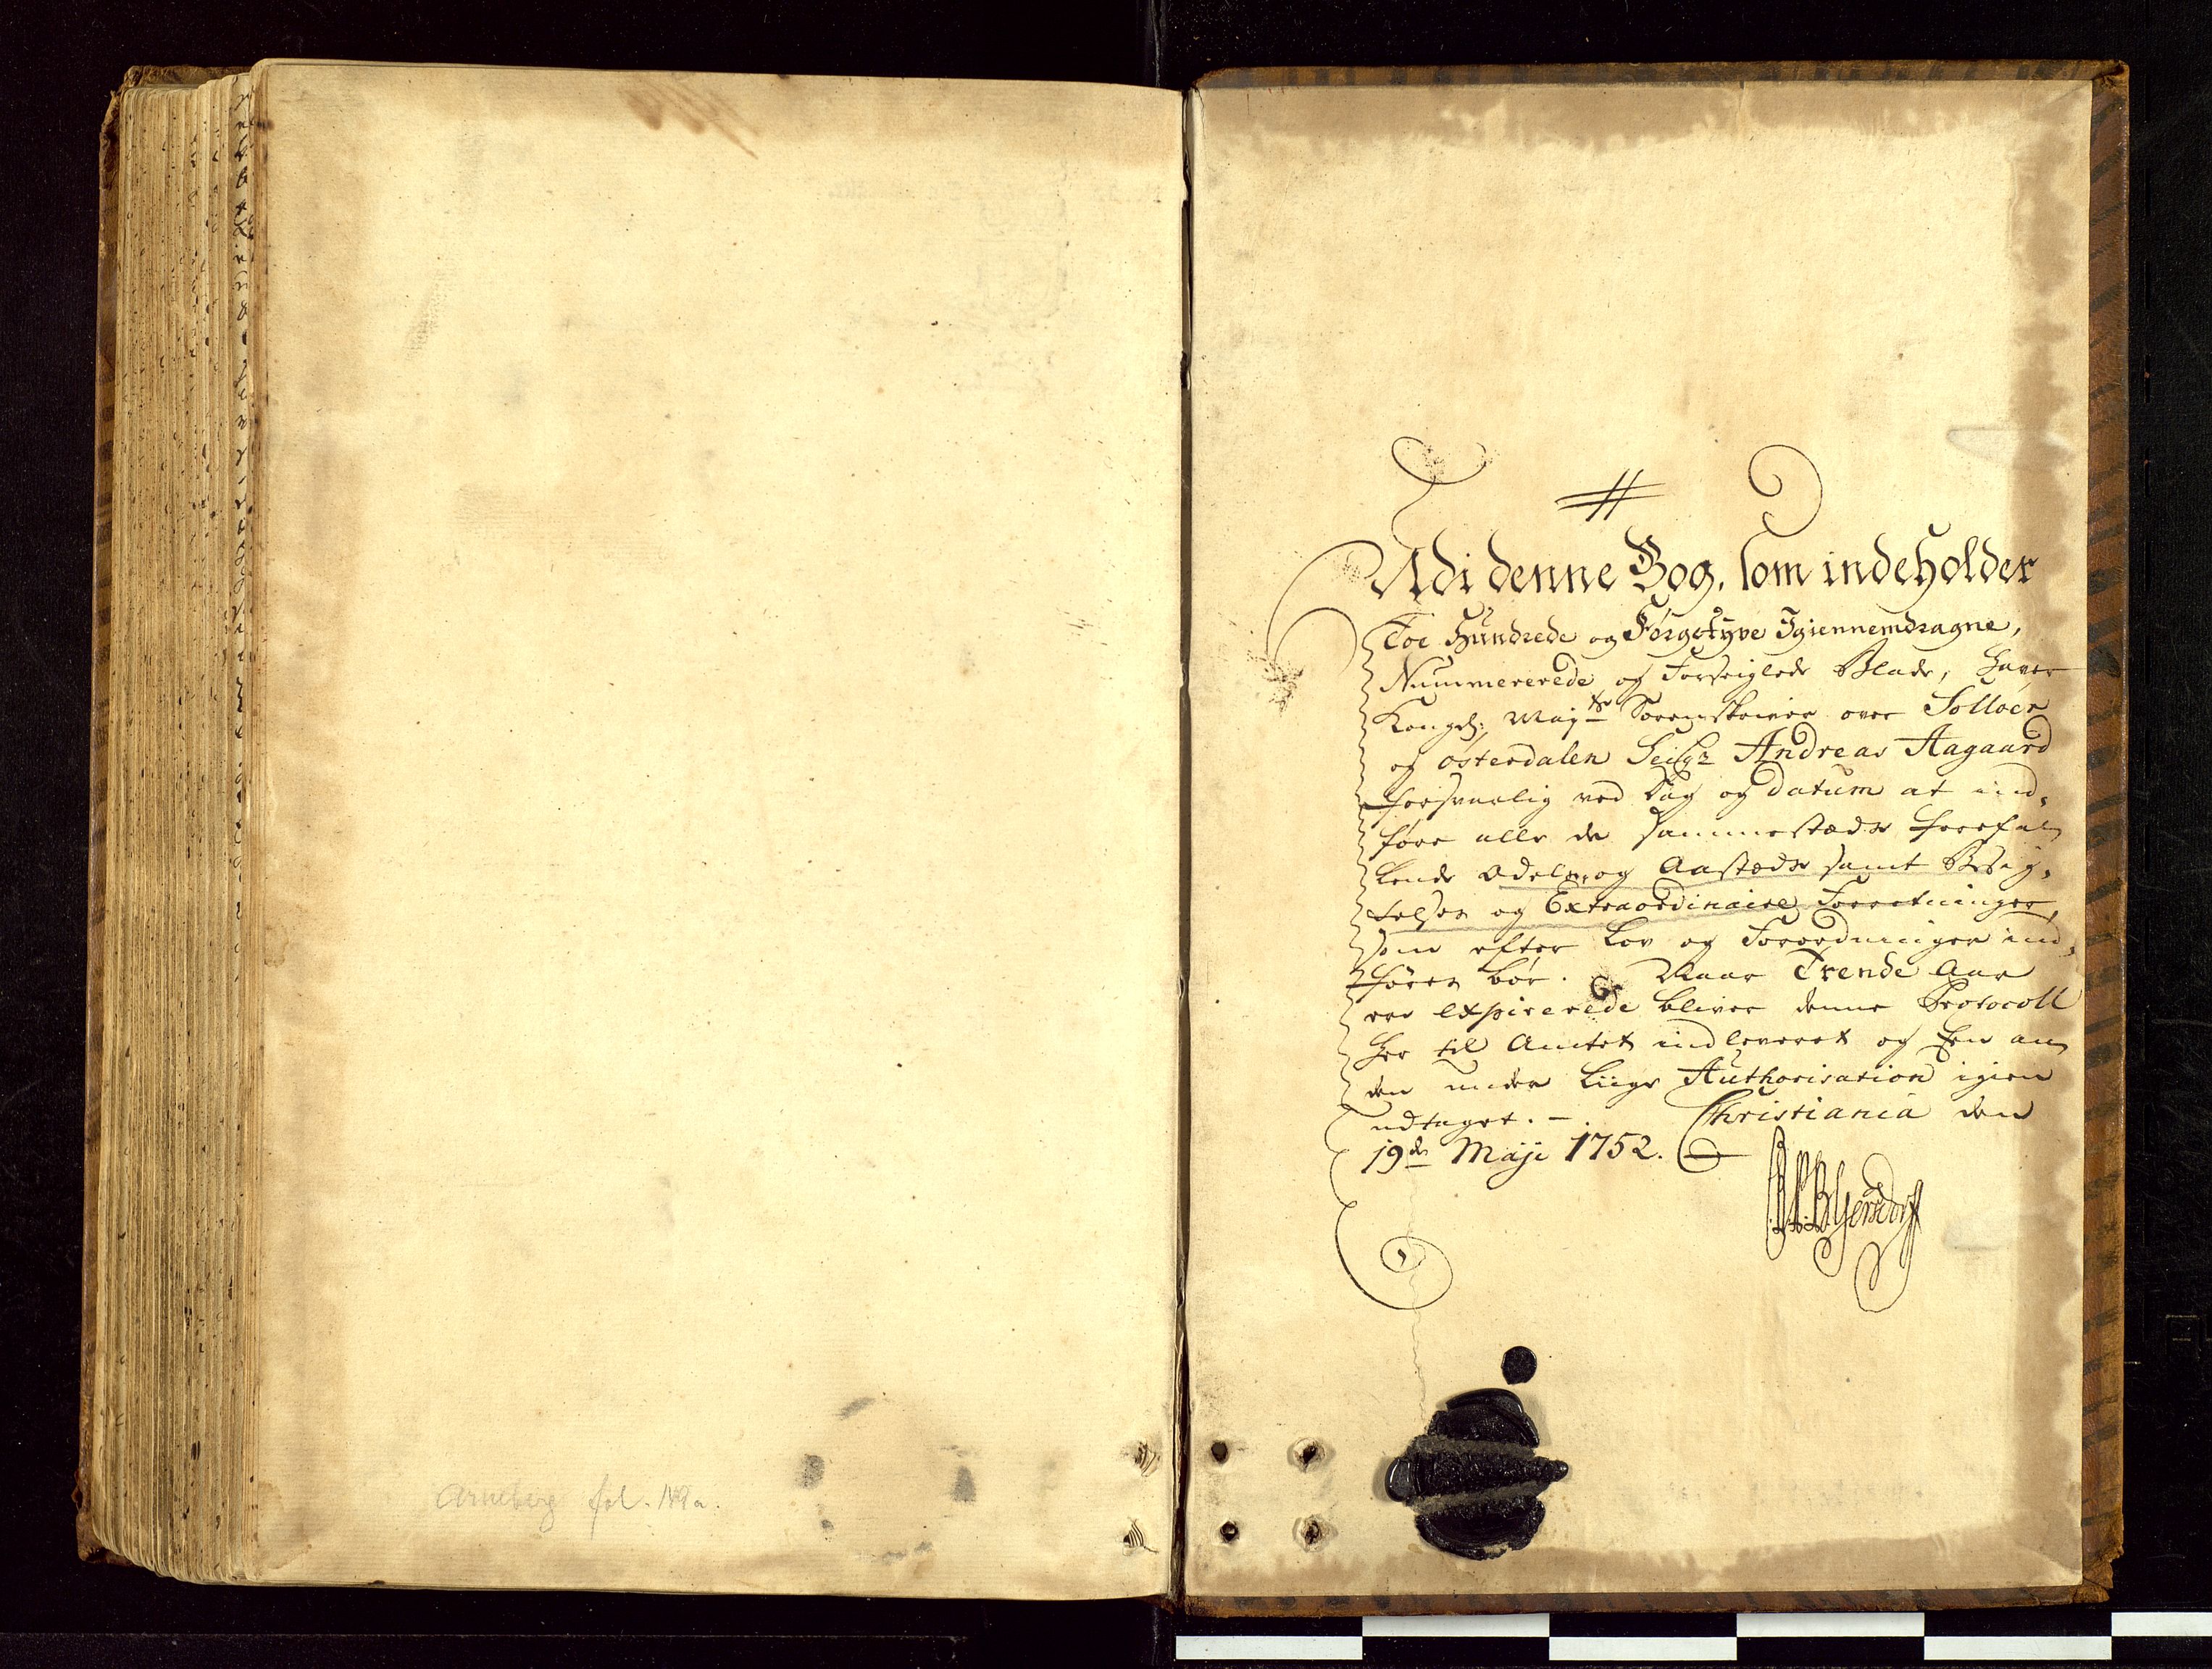 Solør og Østerdalen sorenskriveri, SAH/TING-024/G/Gc/L0003: Ekstrarettsprotokoll, 1752-1755